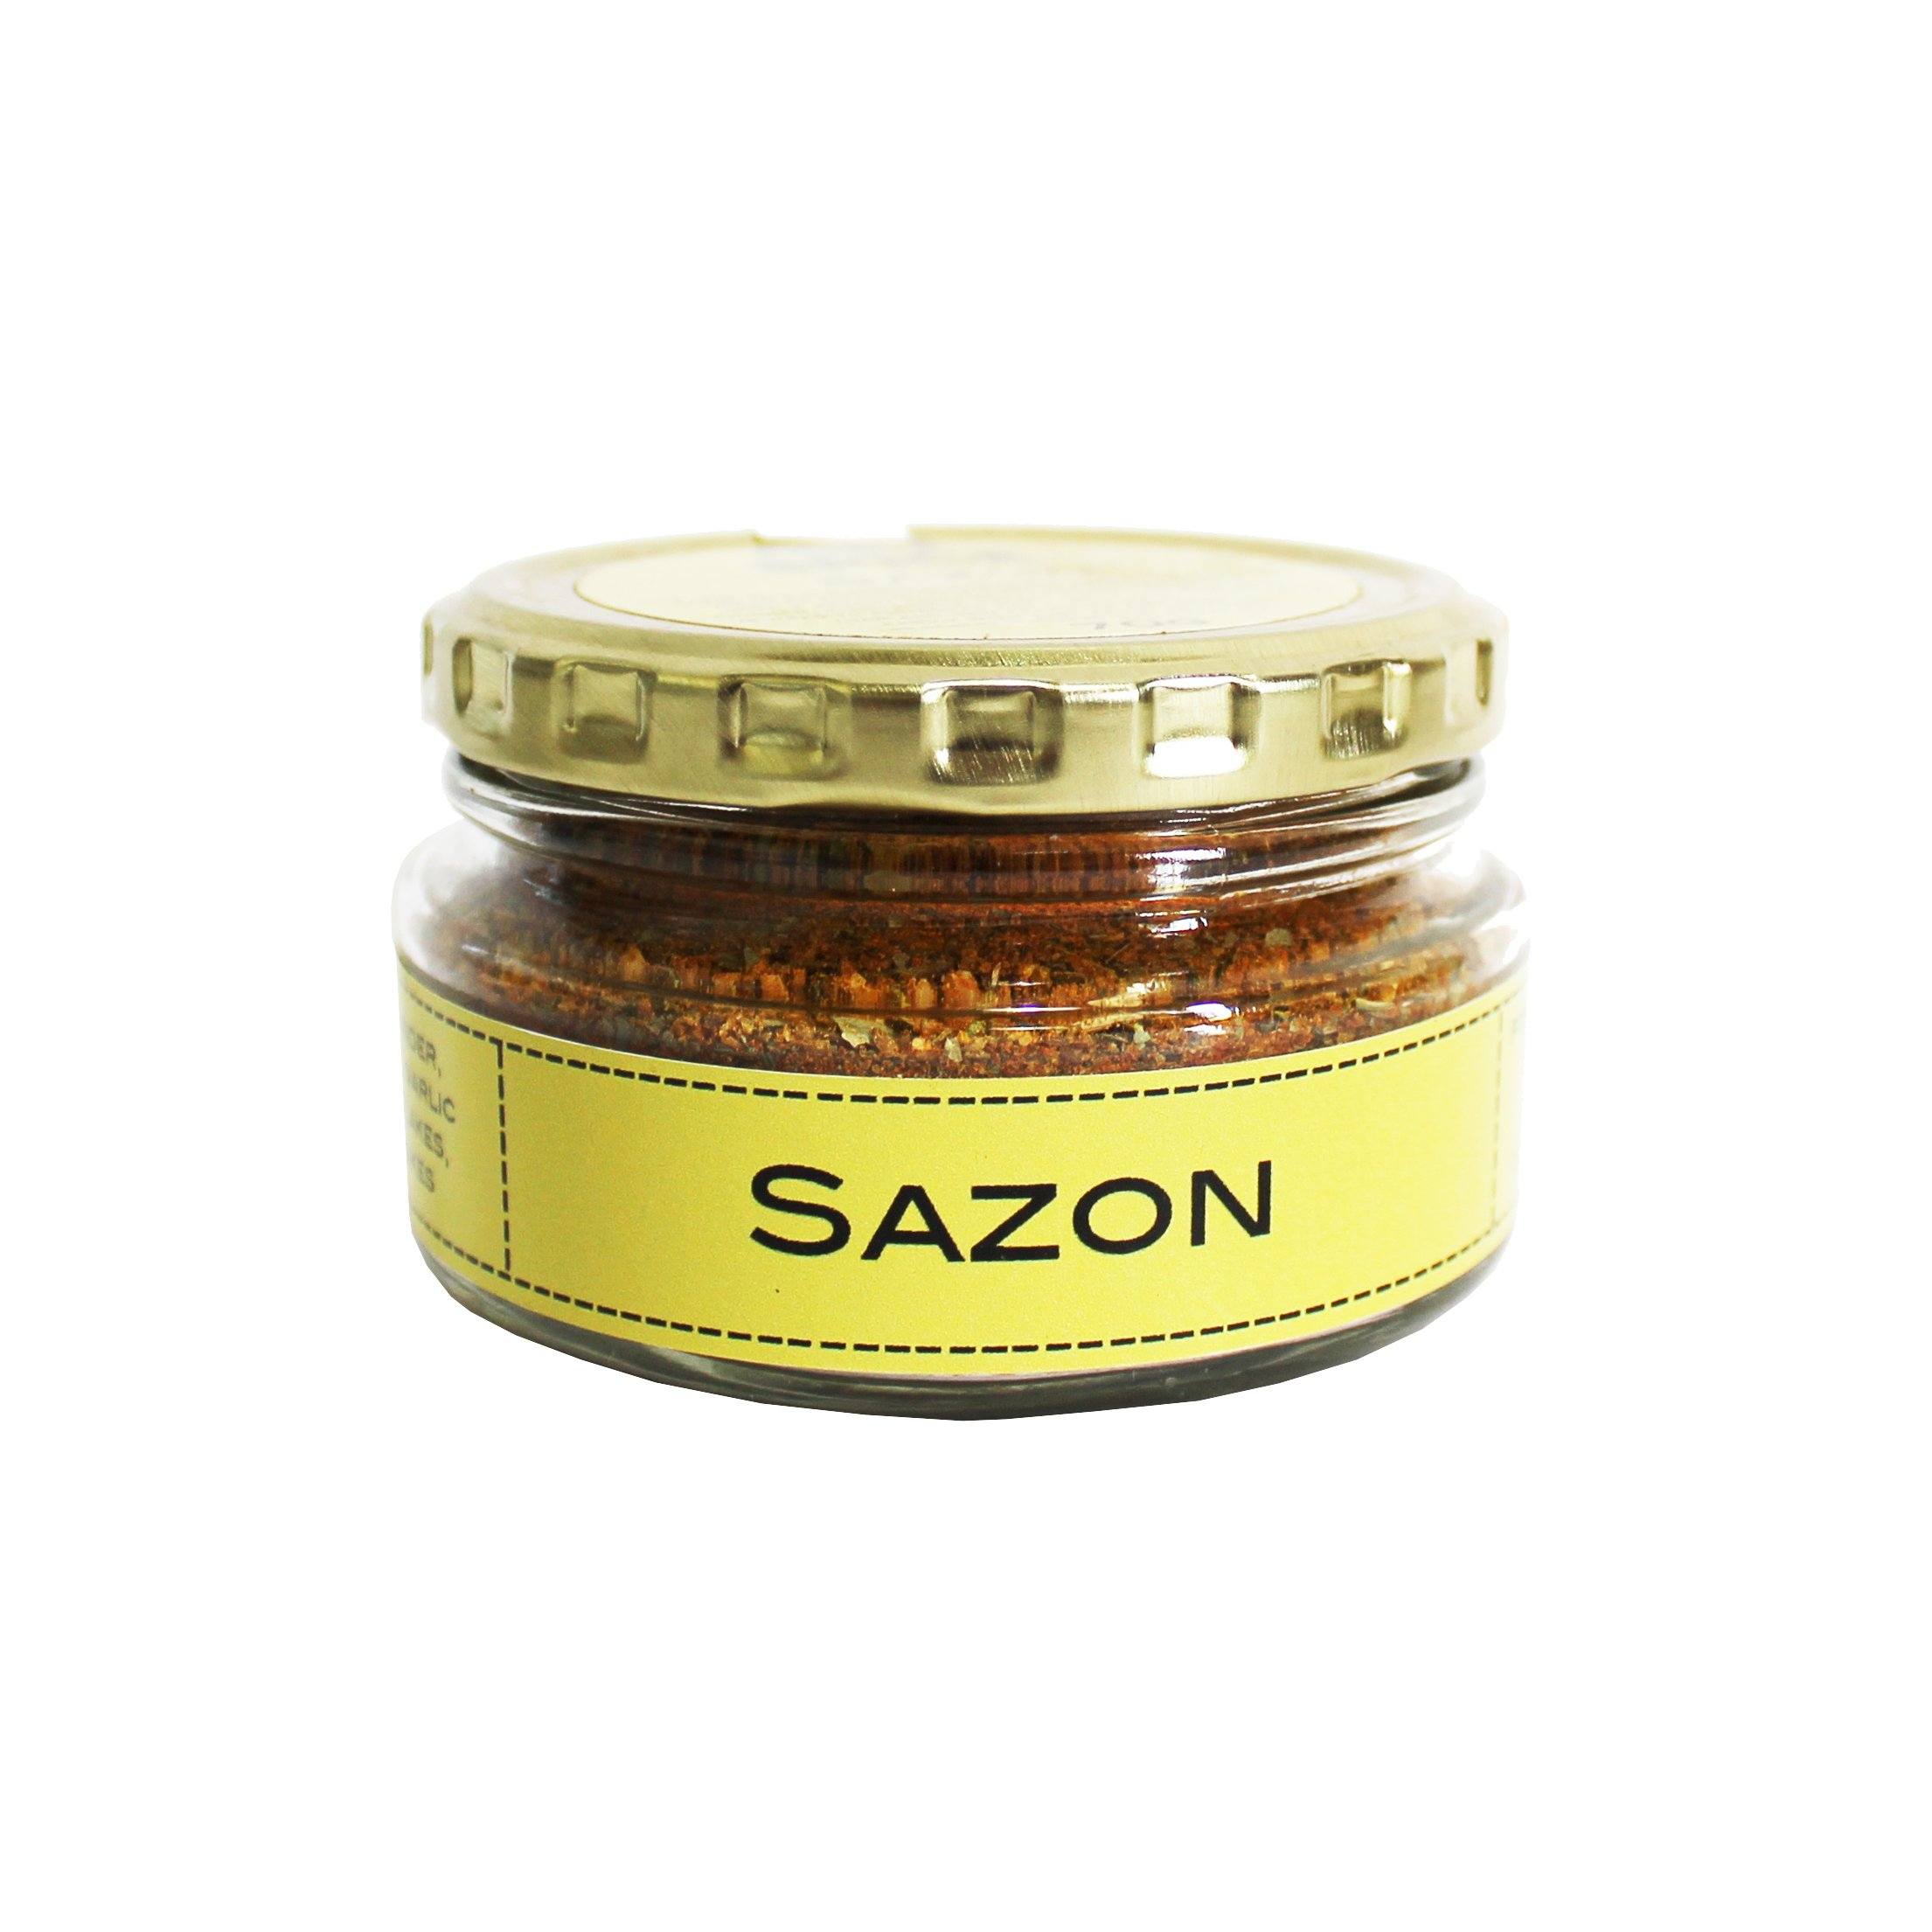 Get Spice Sazon 70g Salts, Herbs & Spices Get Spice 